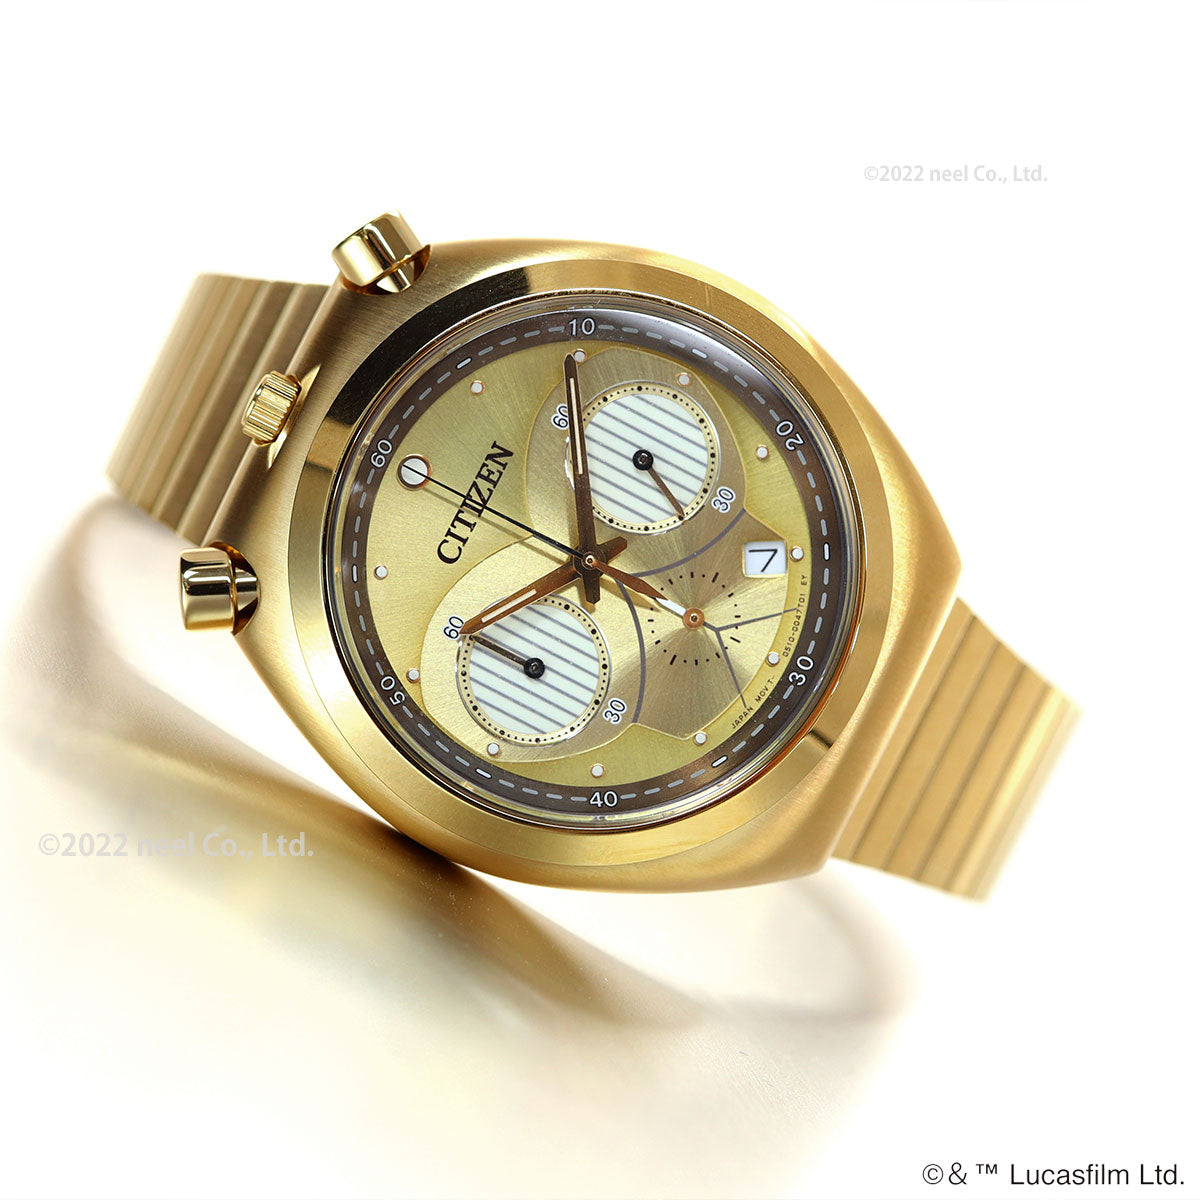 シチズン レコードレーベル ツノクロノ スター・ウォーズ 特定店取扱 限定モデル ｢C-3PO｣ 腕時計 AN3662-51W CITIZEN RECORD LABEL TSUNO CHRONO STAR WARS